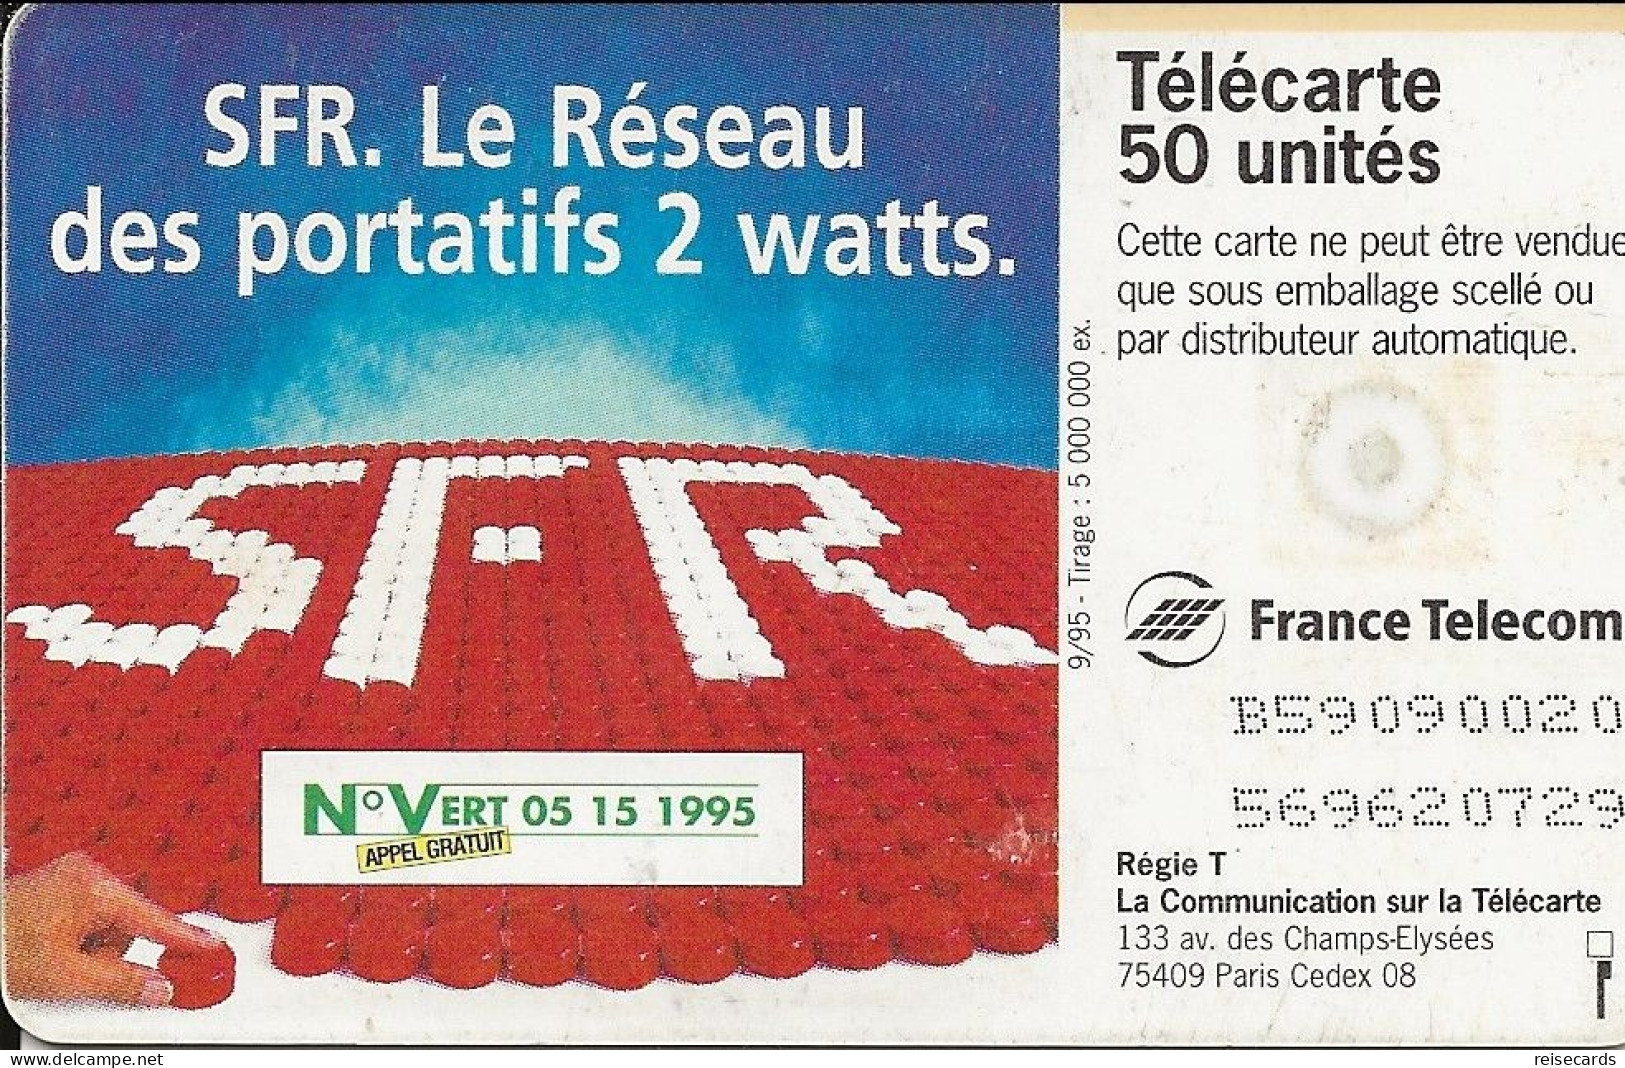 France: France Telecom 9/95 F590a SFR Portatif - 1995